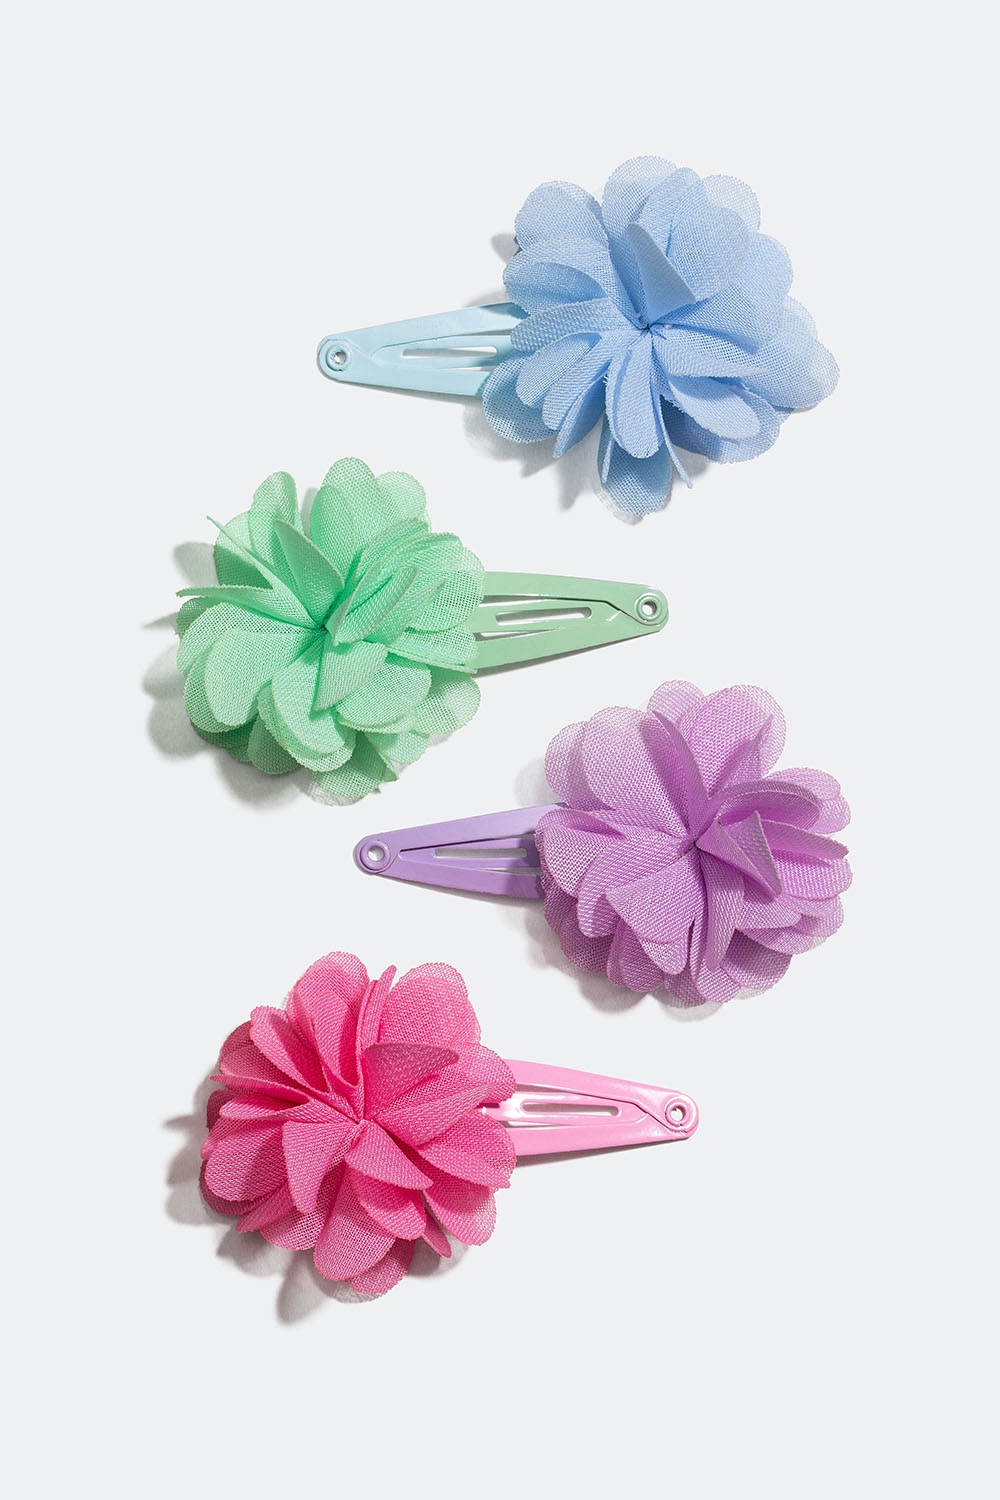 Hårspænder i forskellige farver med blomster, 4-pak i gruppen Børn / Hårpynt til børn / Hårspænder til børn hos Glitter (403000099900)